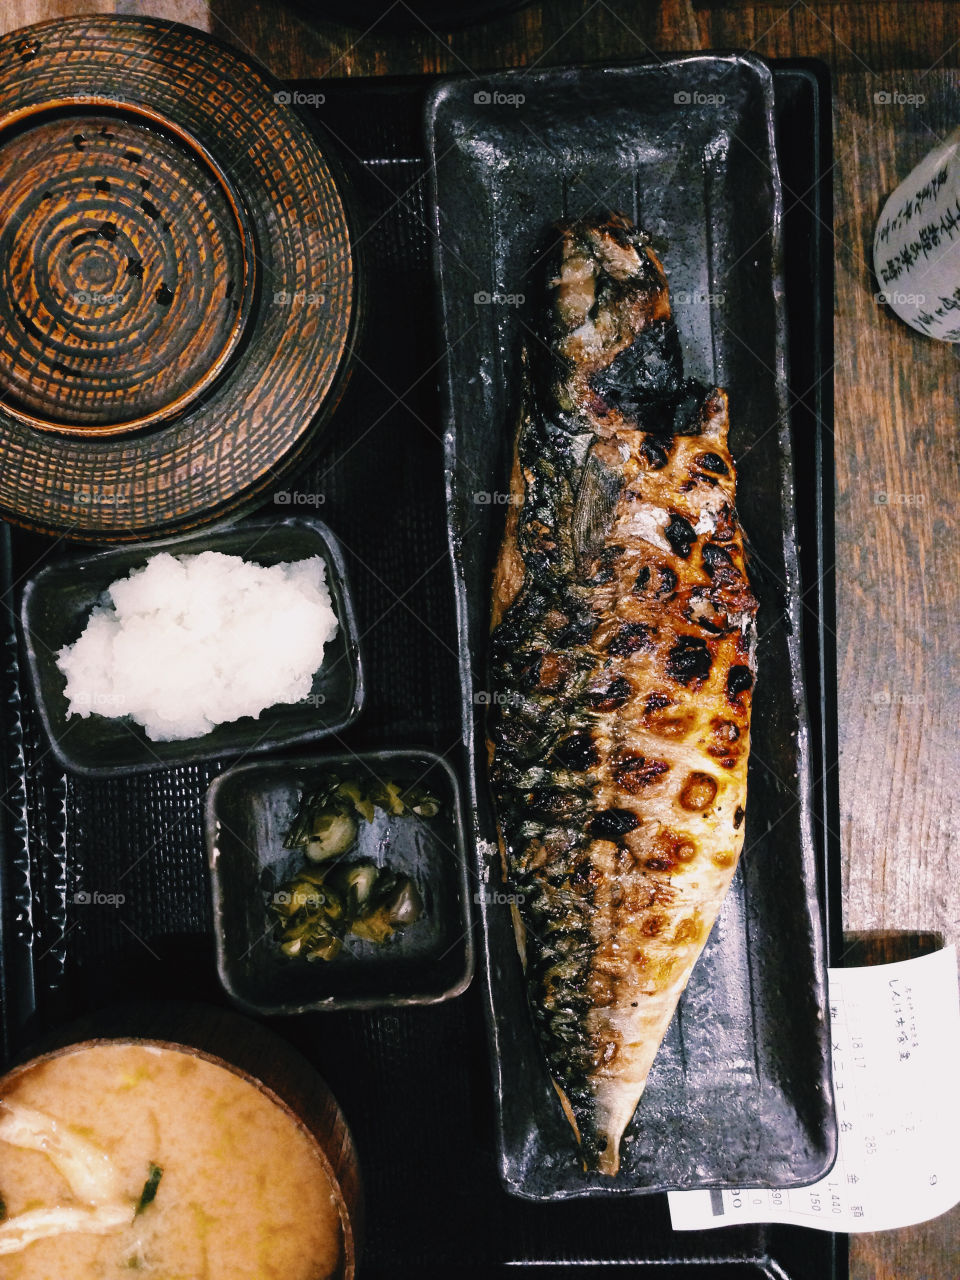 Mackerel. Japanese dinner in Tokyo